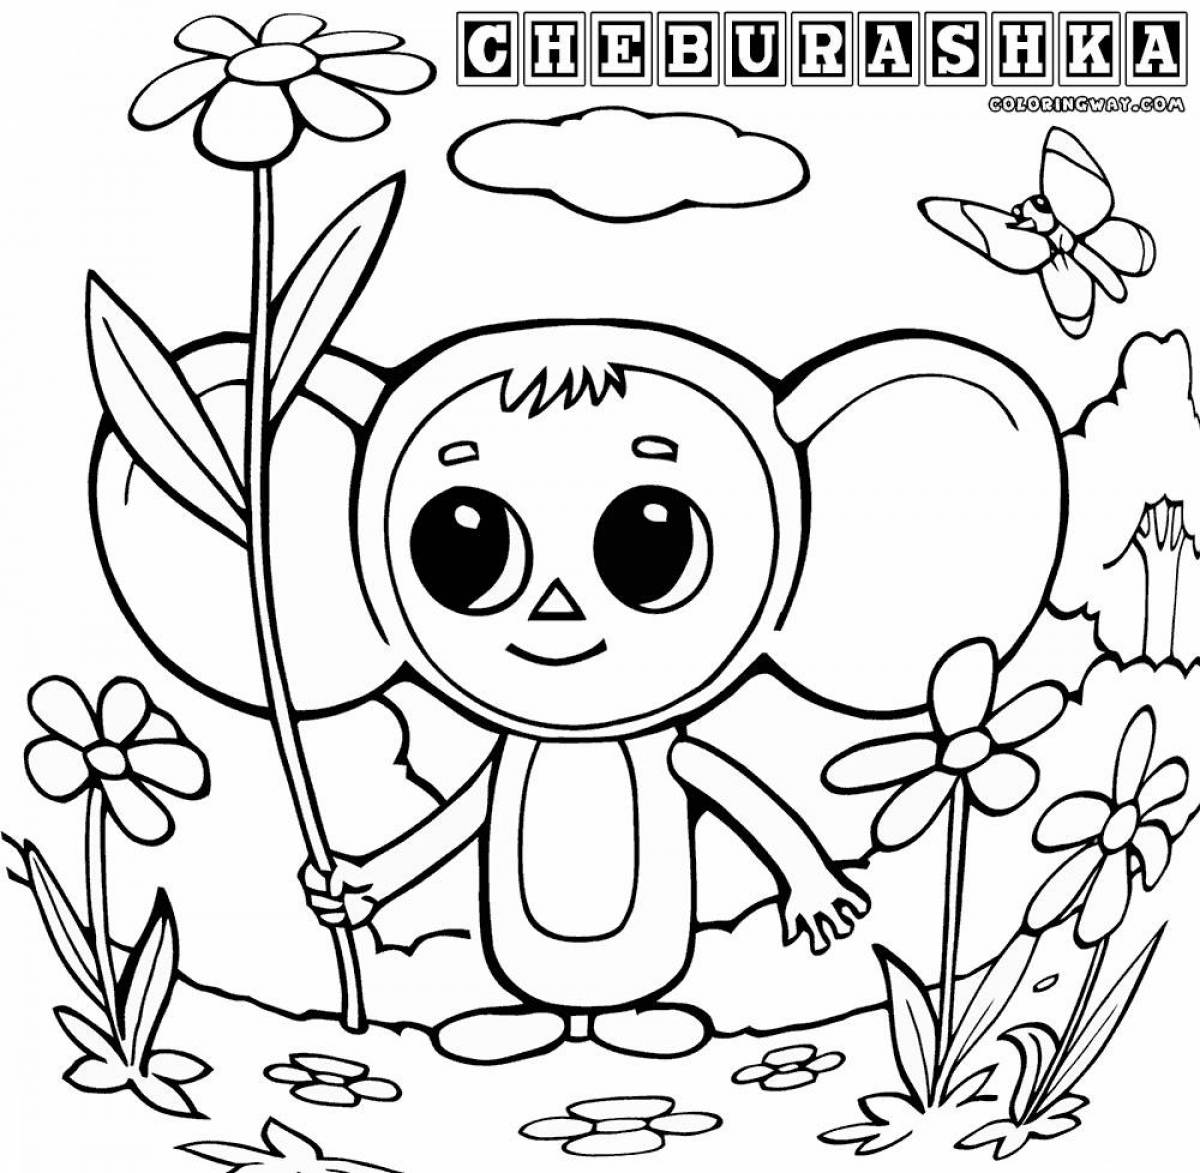 Cheburashka for children #16